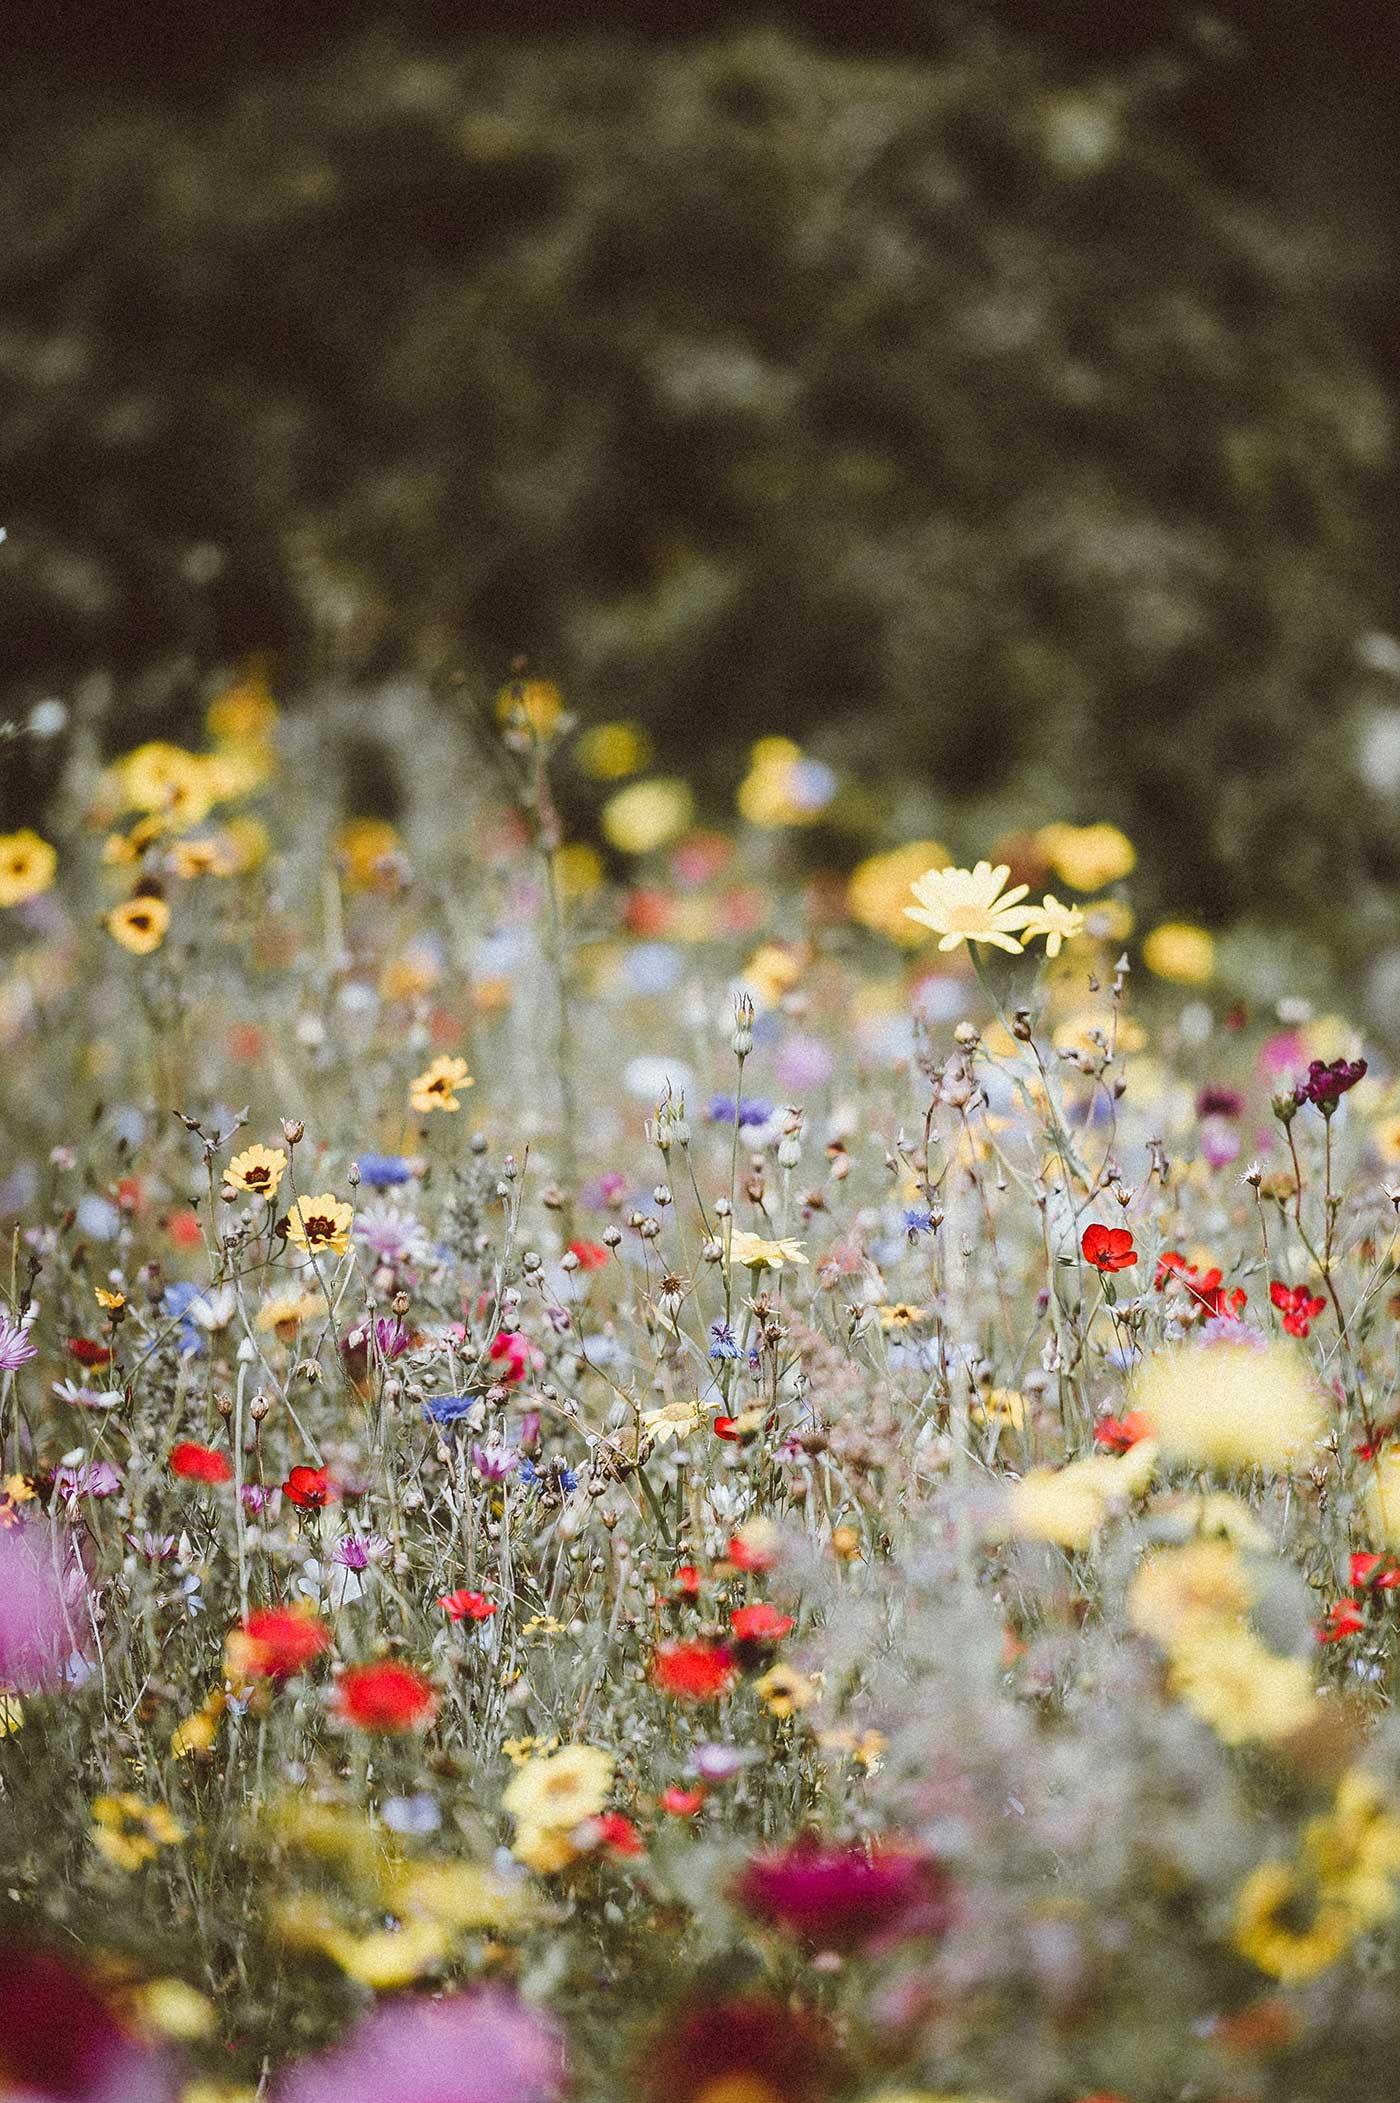 Wildflowers in a field.